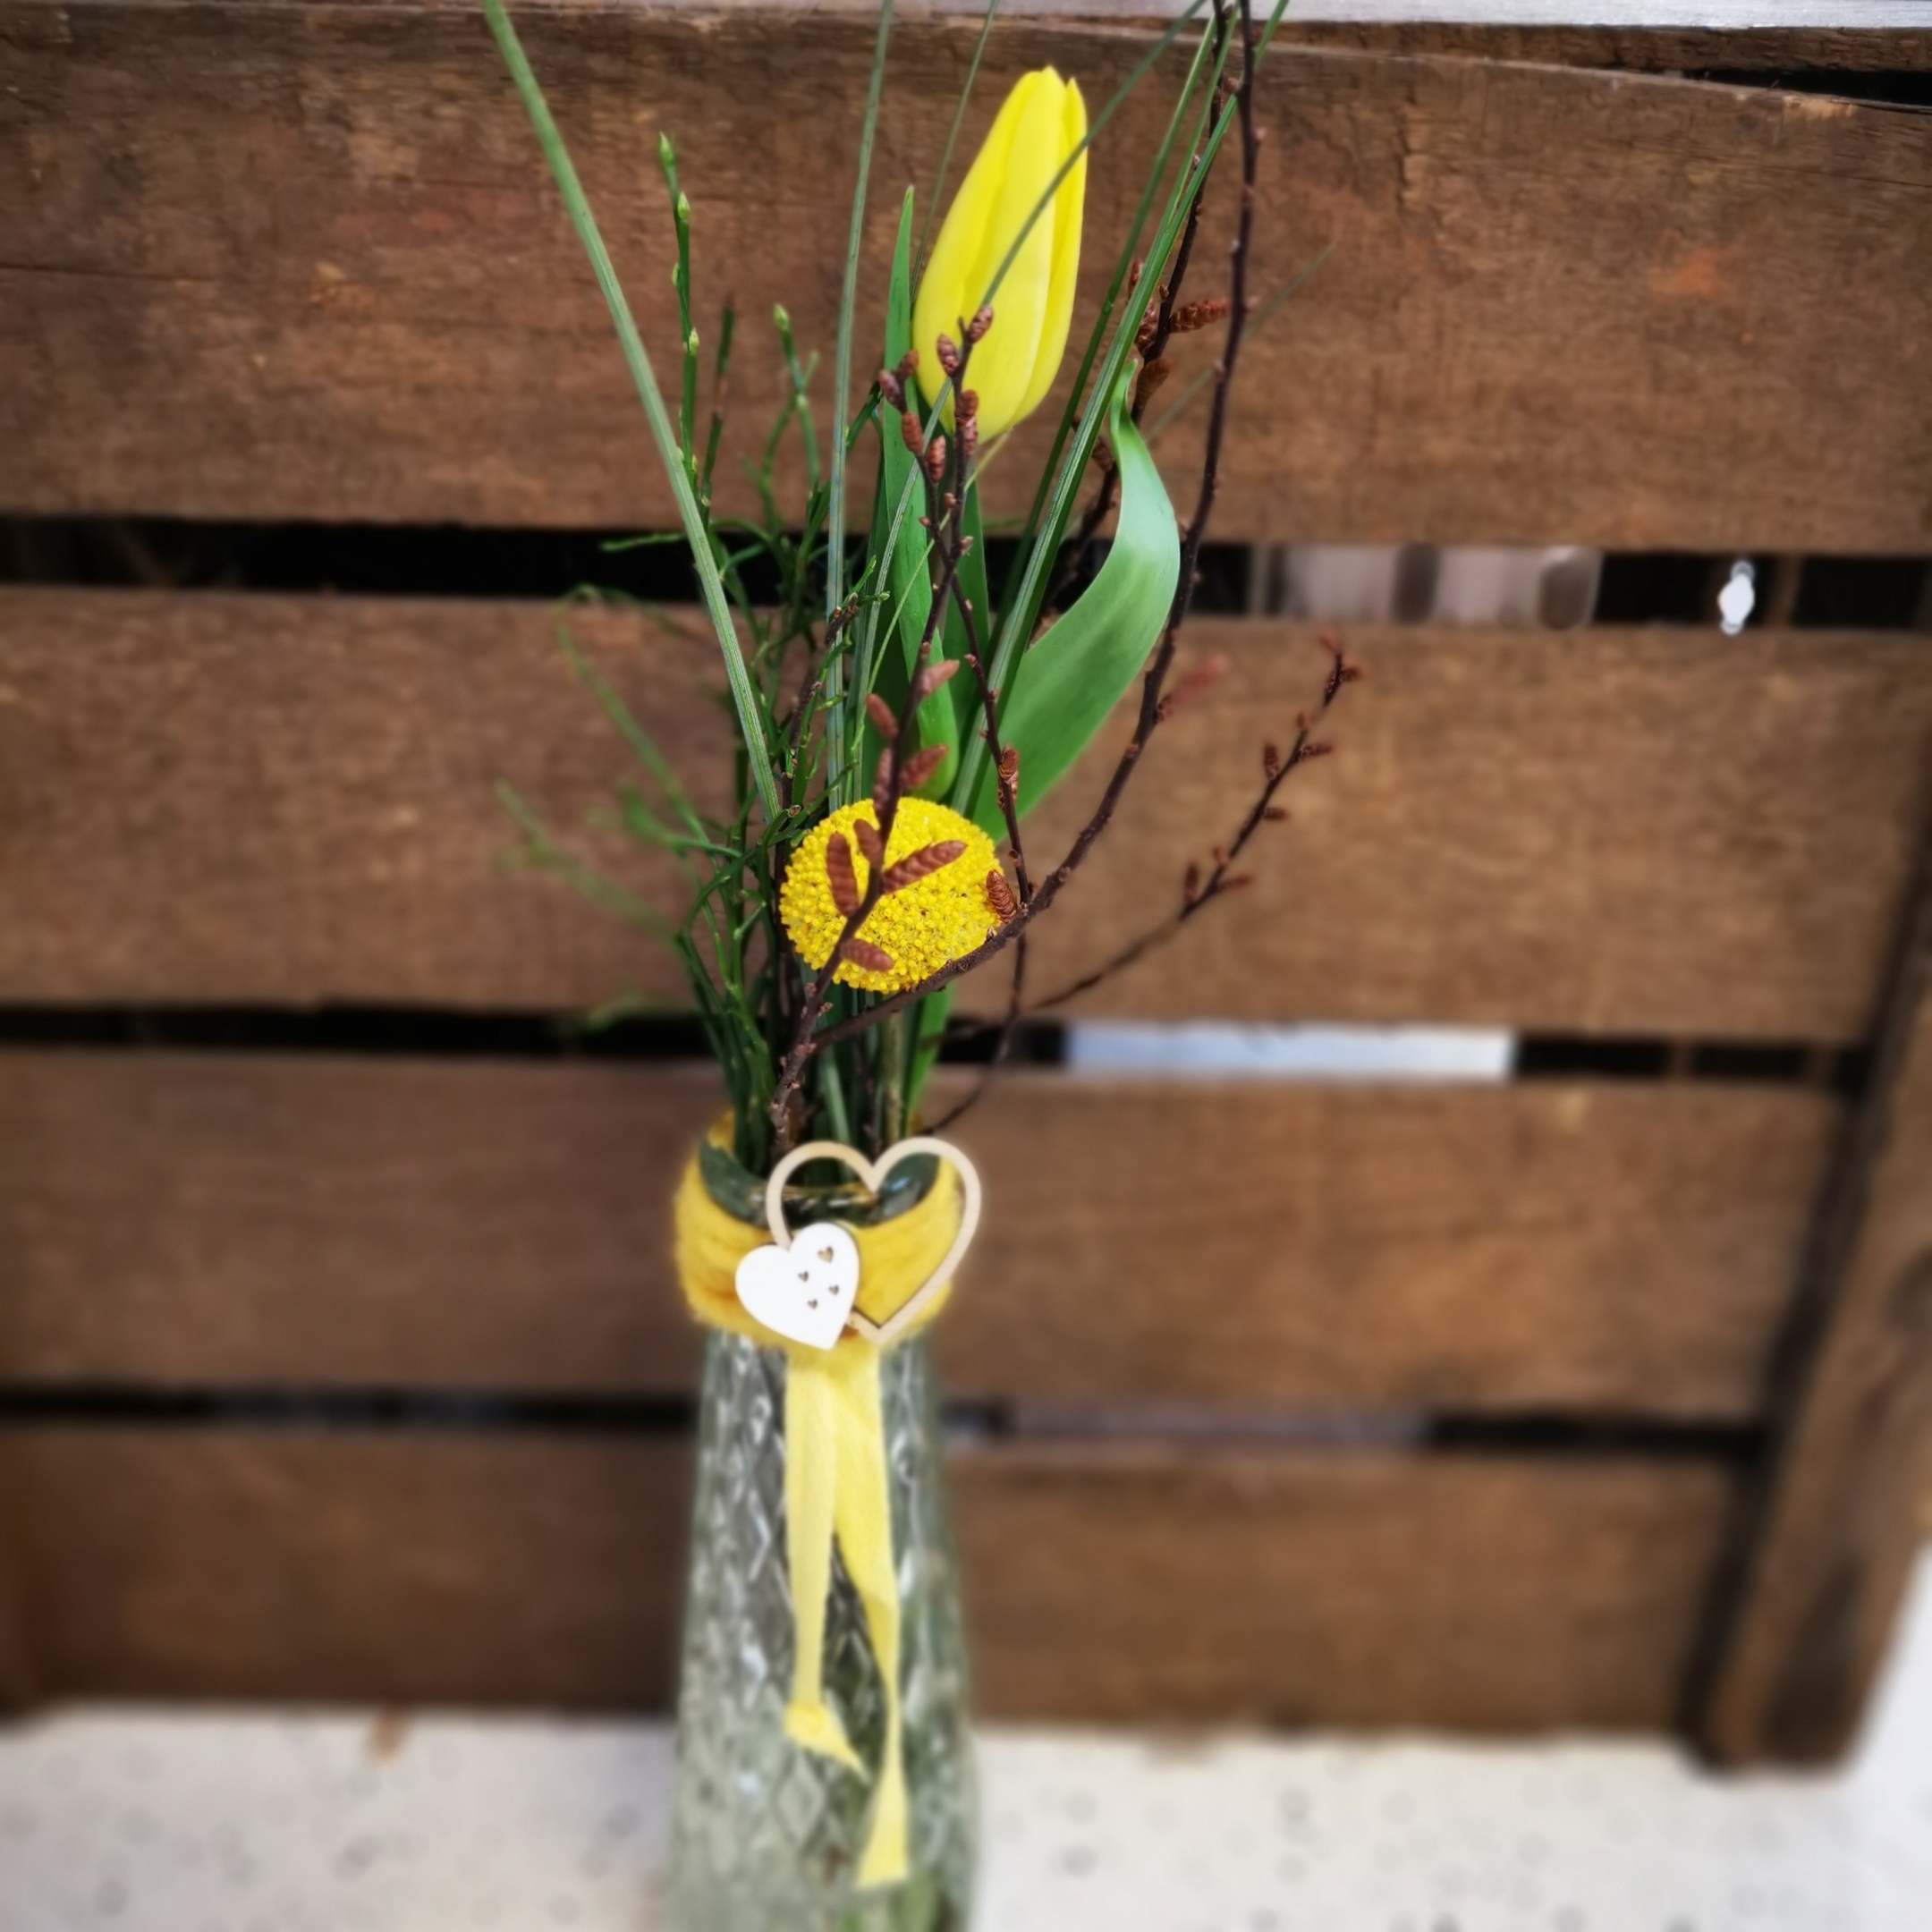 Tulpen inkl. Beiwerk in einer Vase Bild 1